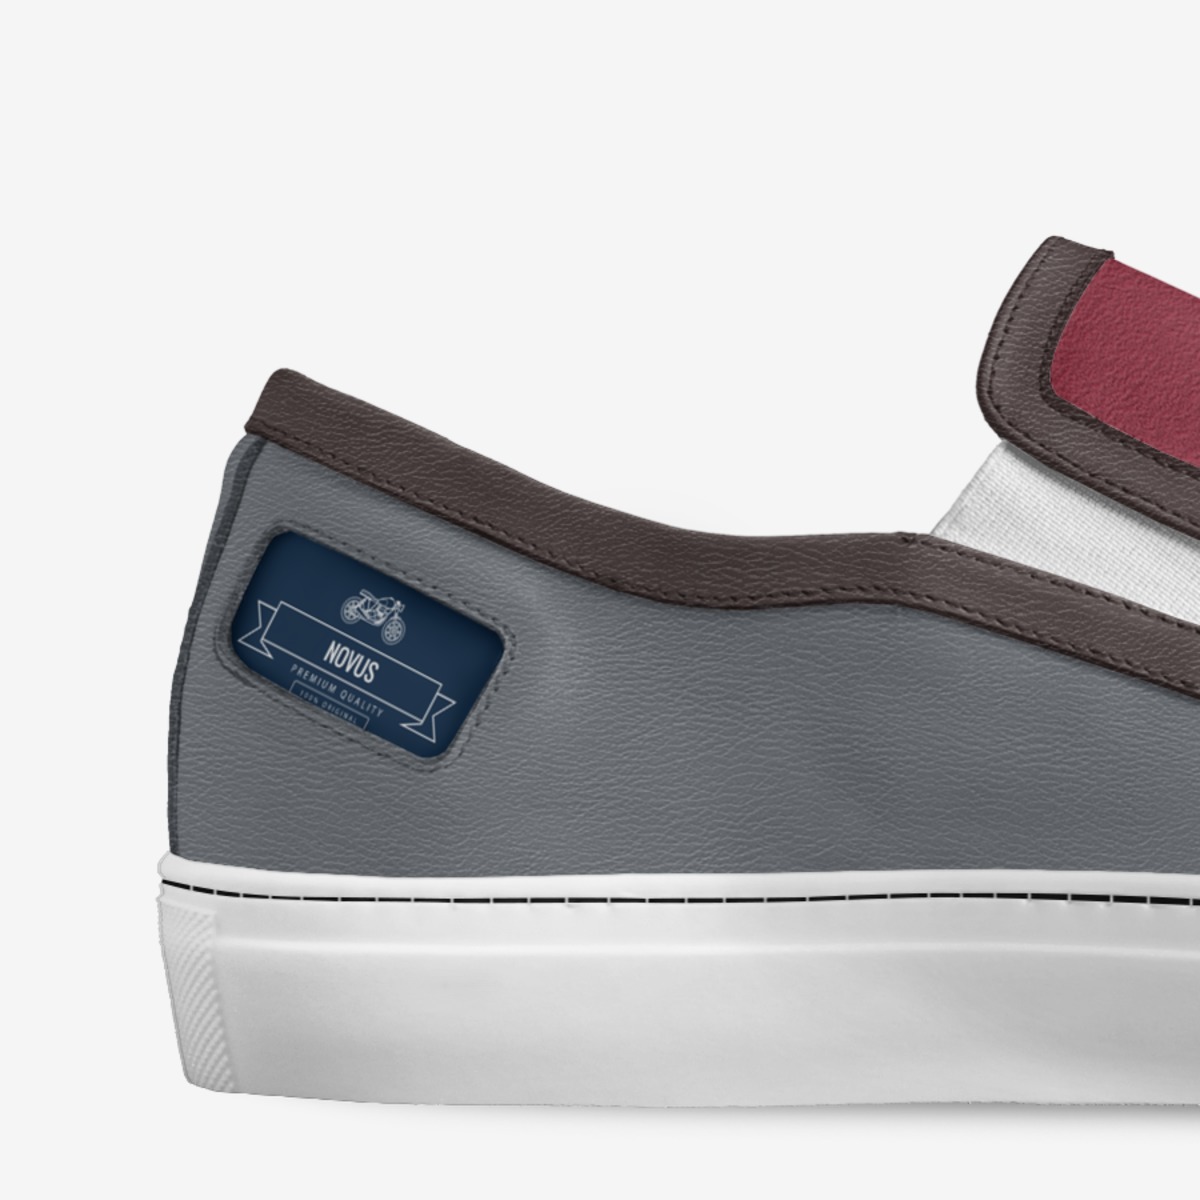 Novus | A Custom Shoe concept by Aman Pratik